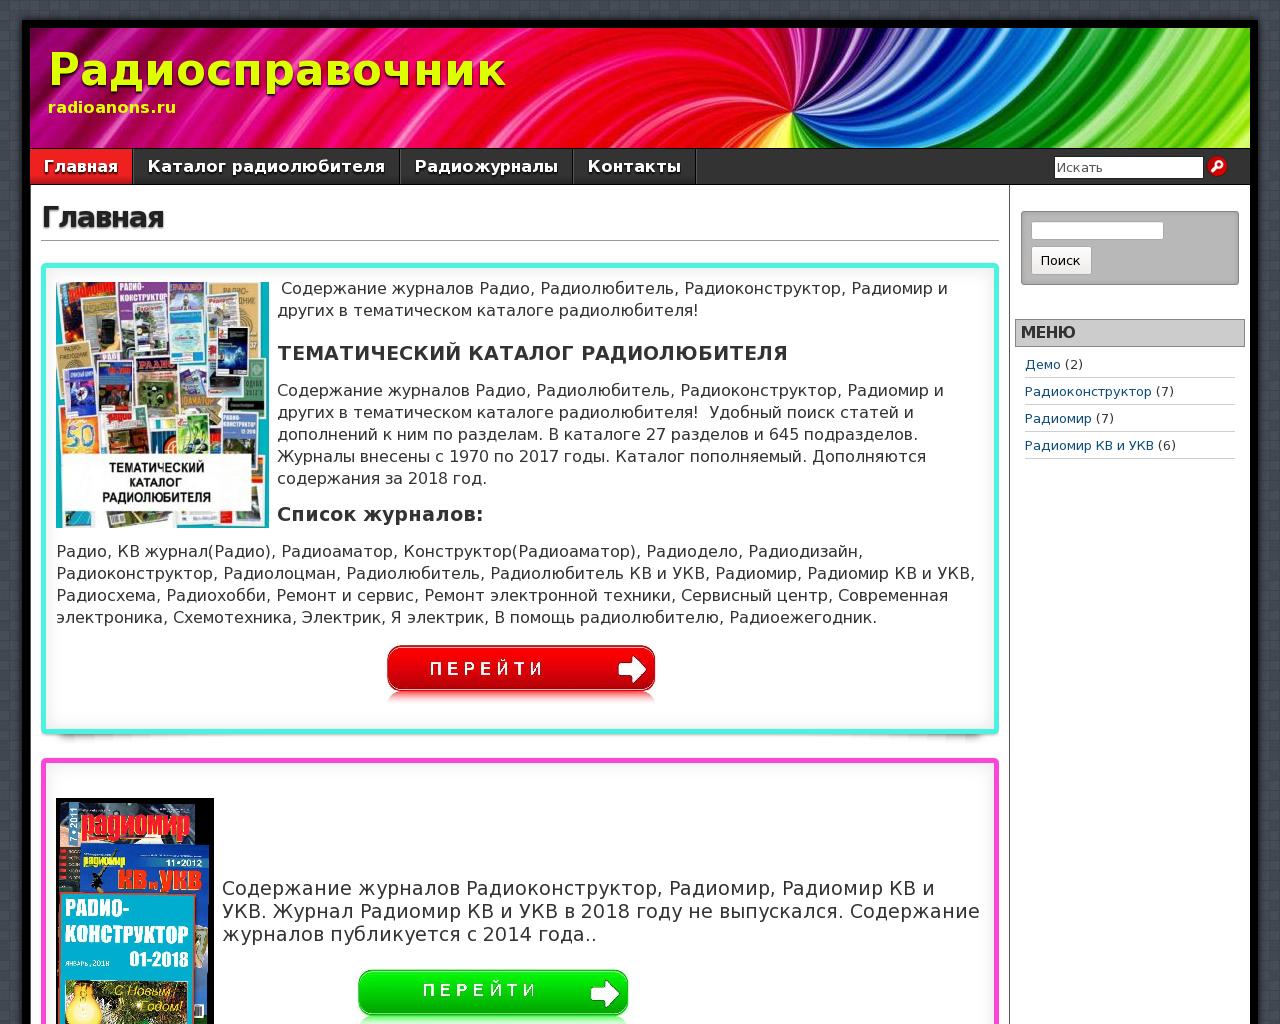 Изображение сайта radioanons.ru в разрешении 1280x1024